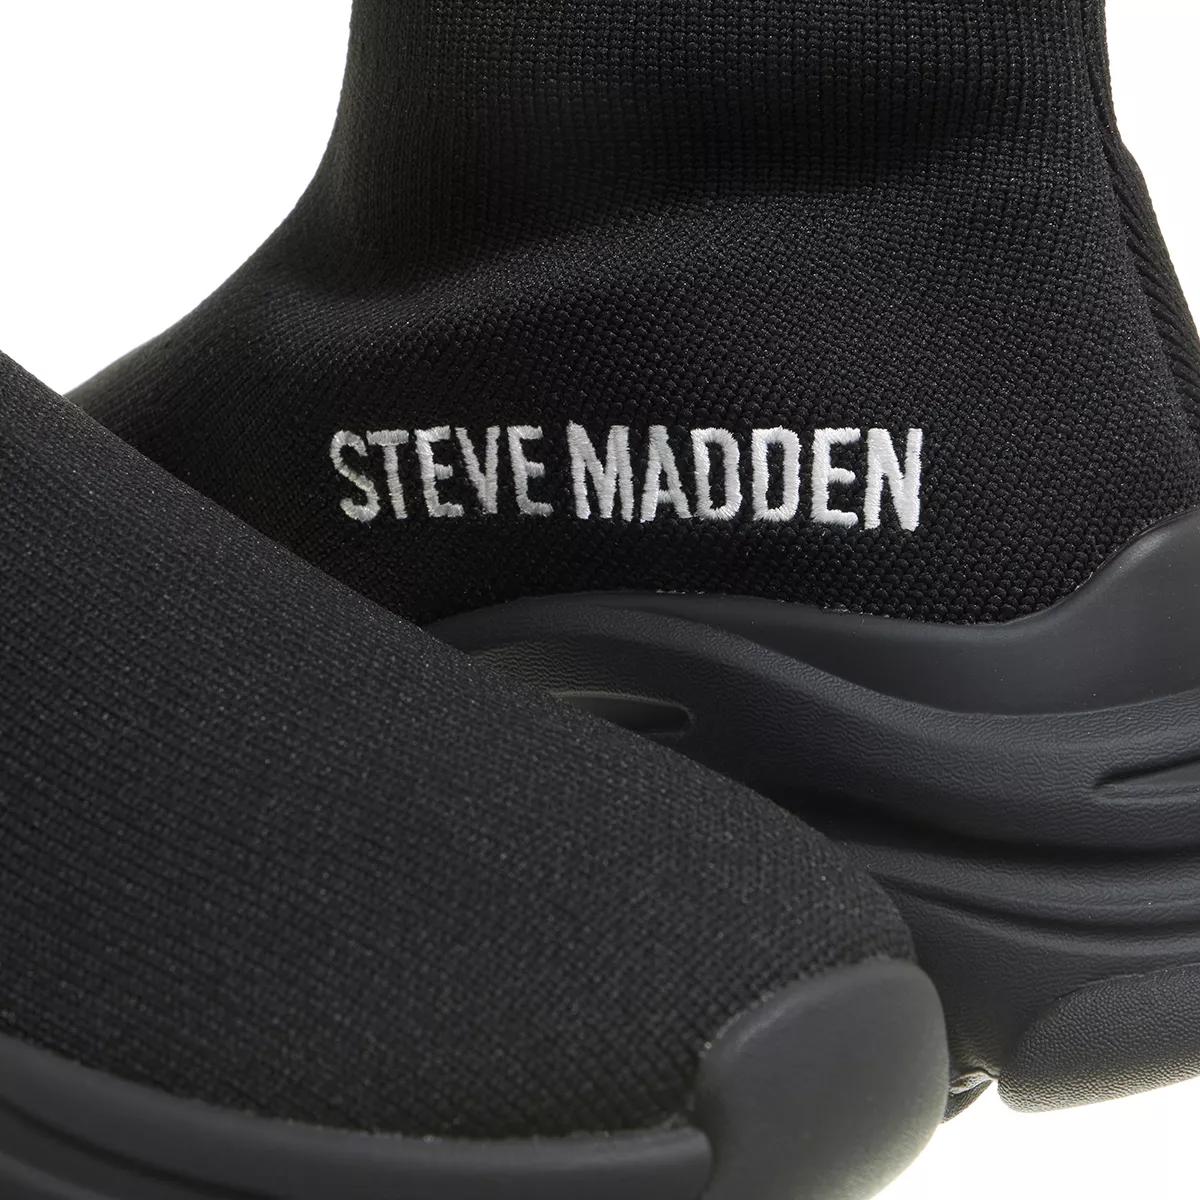 Steve Madden Sneakers - Partisan - Gr. 41 (EU) - in Schwarz - für Damen von Steve Madden